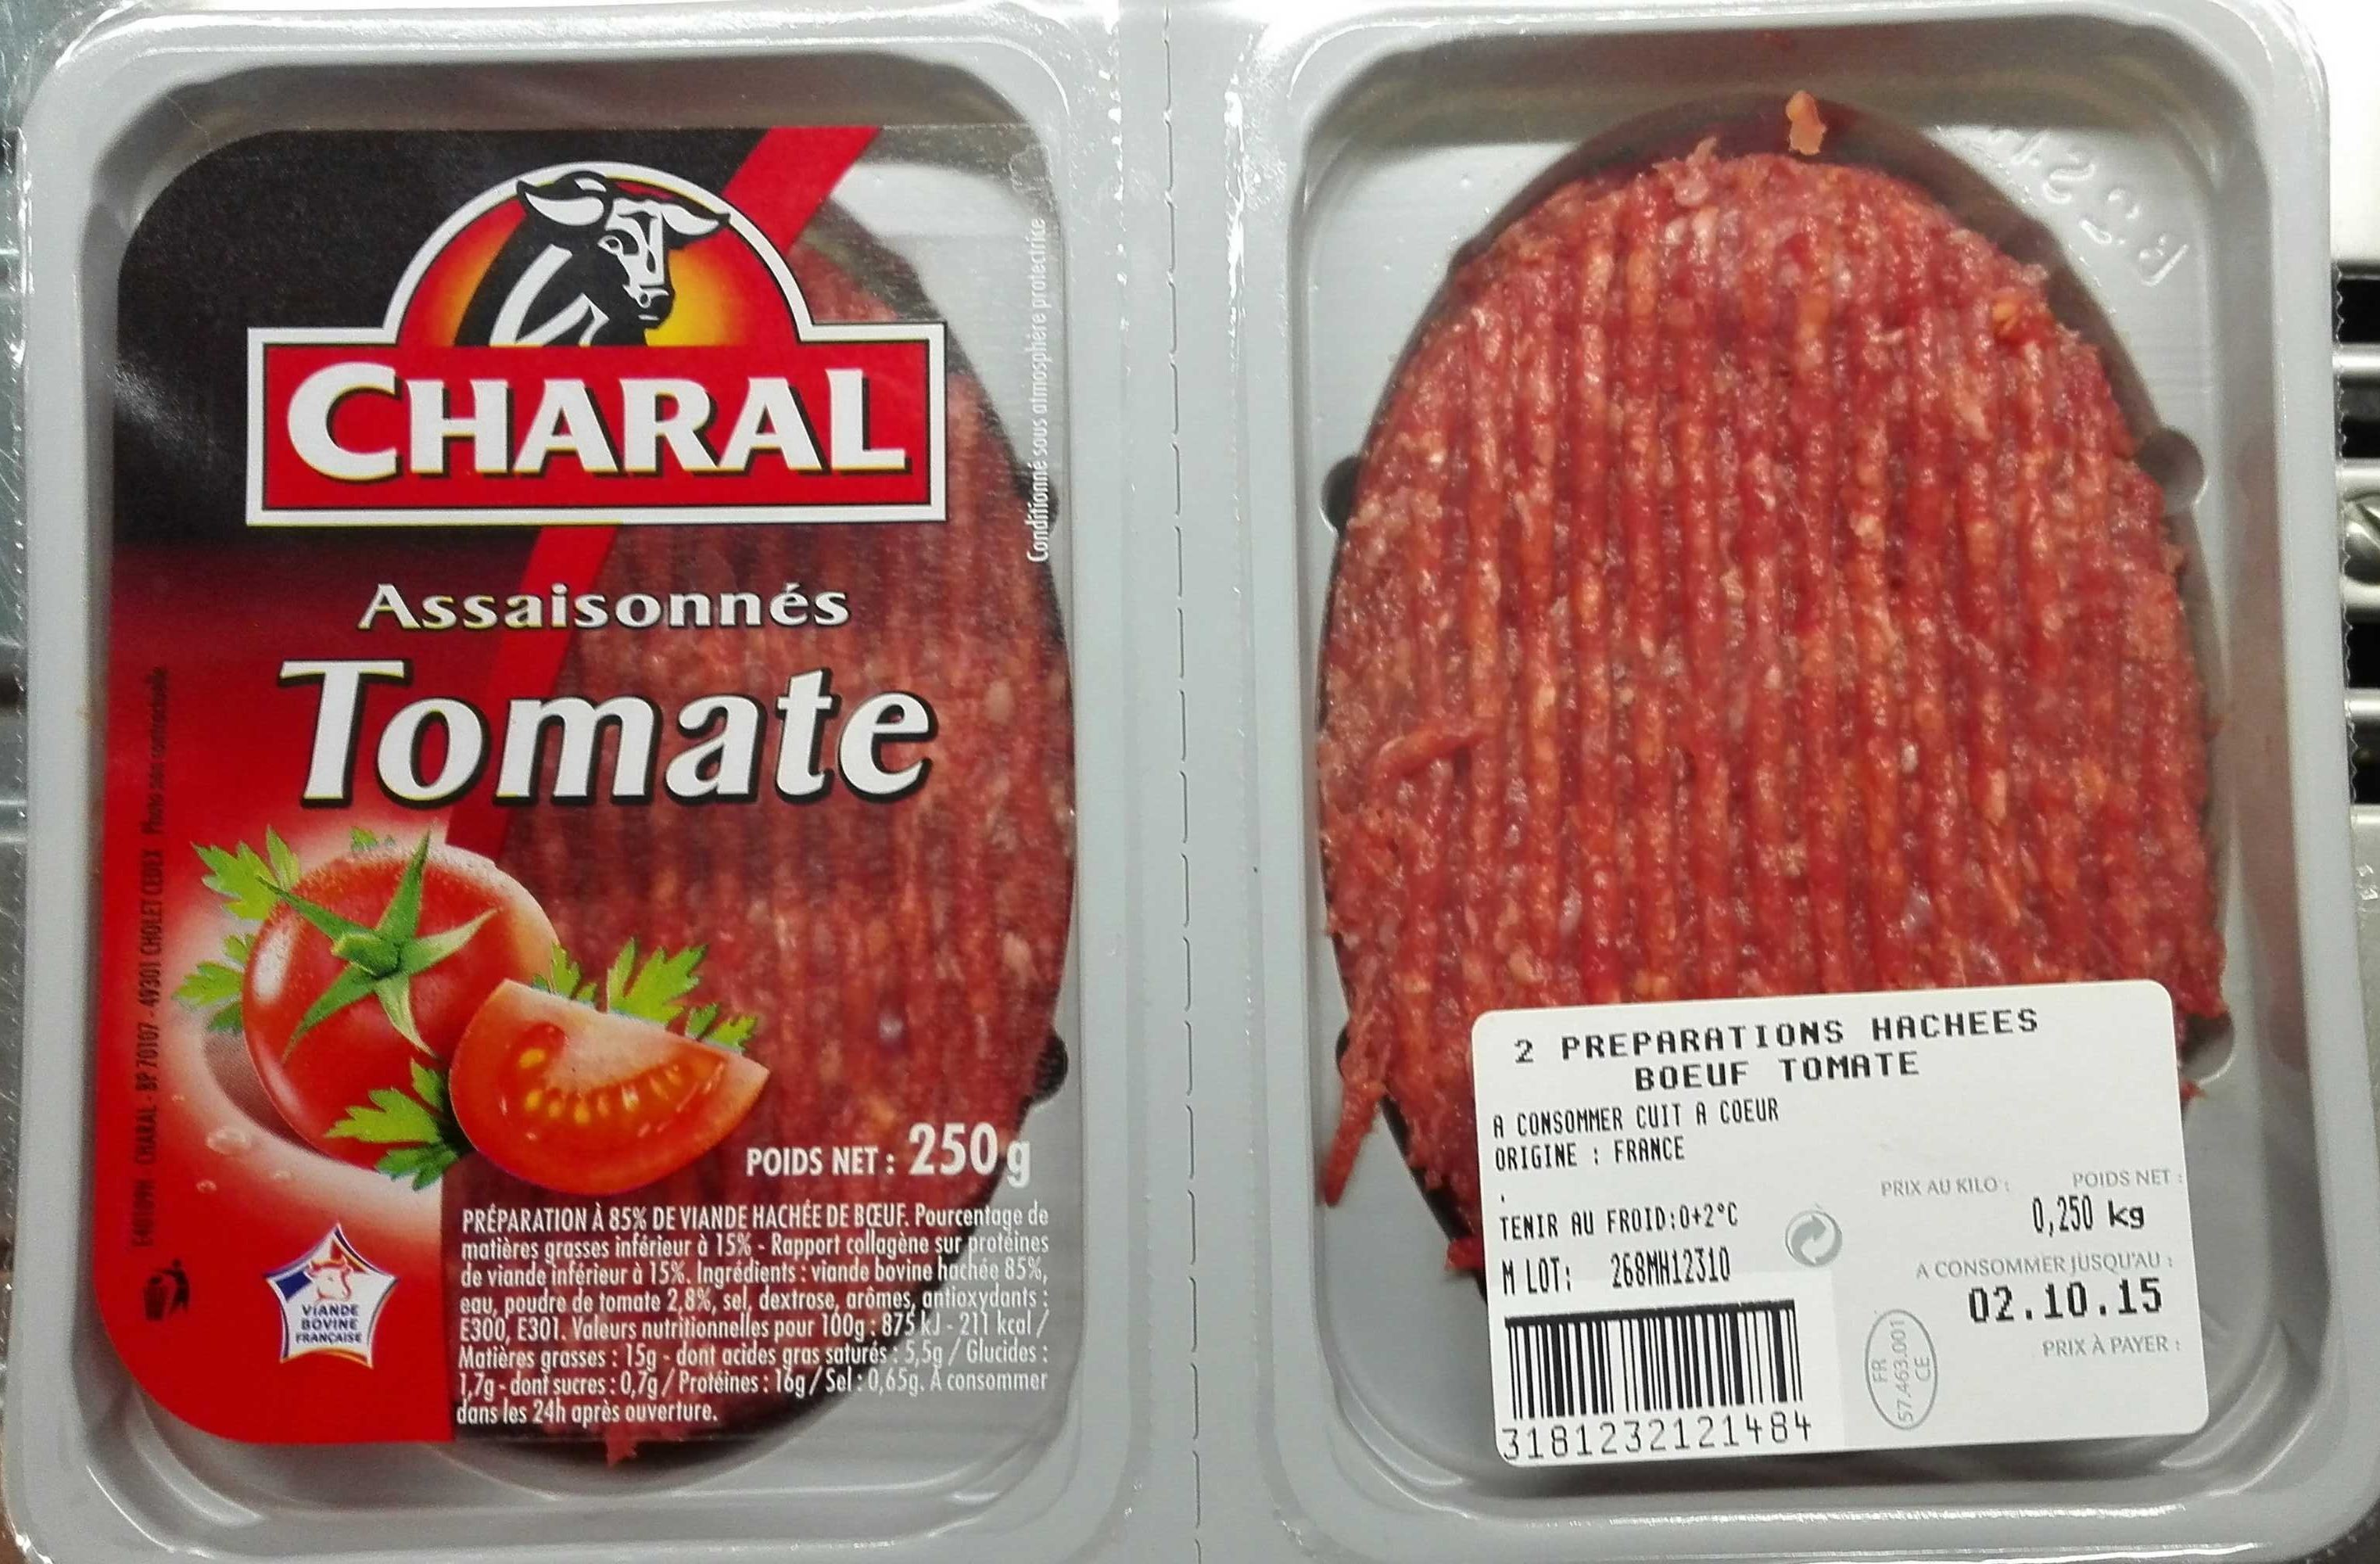 Assaisonnés tomate - Product - fr